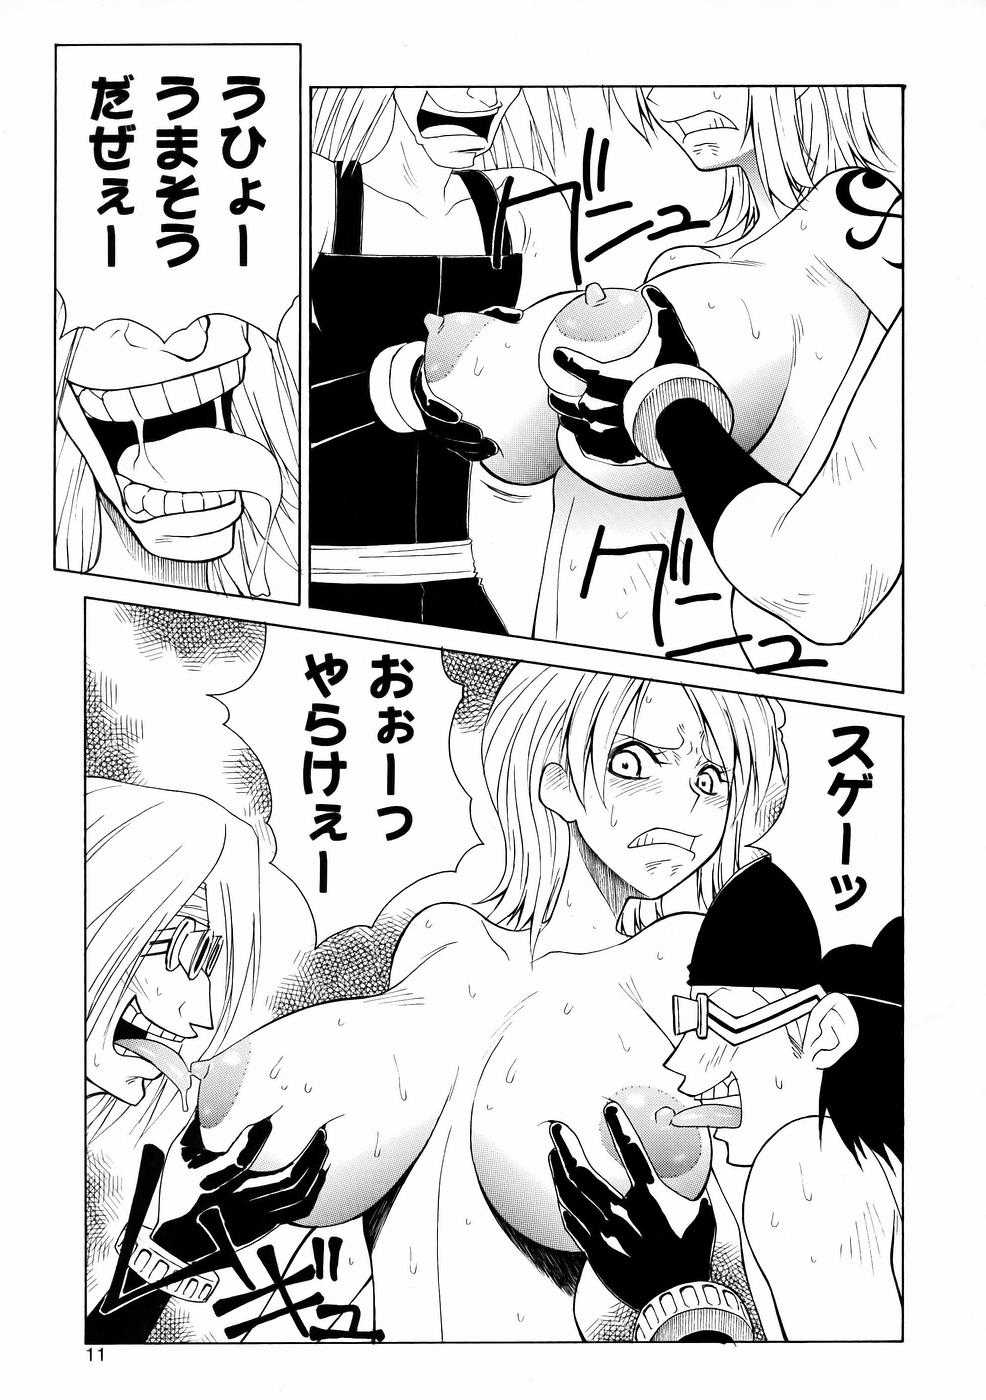 [あると屋] mikicy Vol.06 (One Piece) 